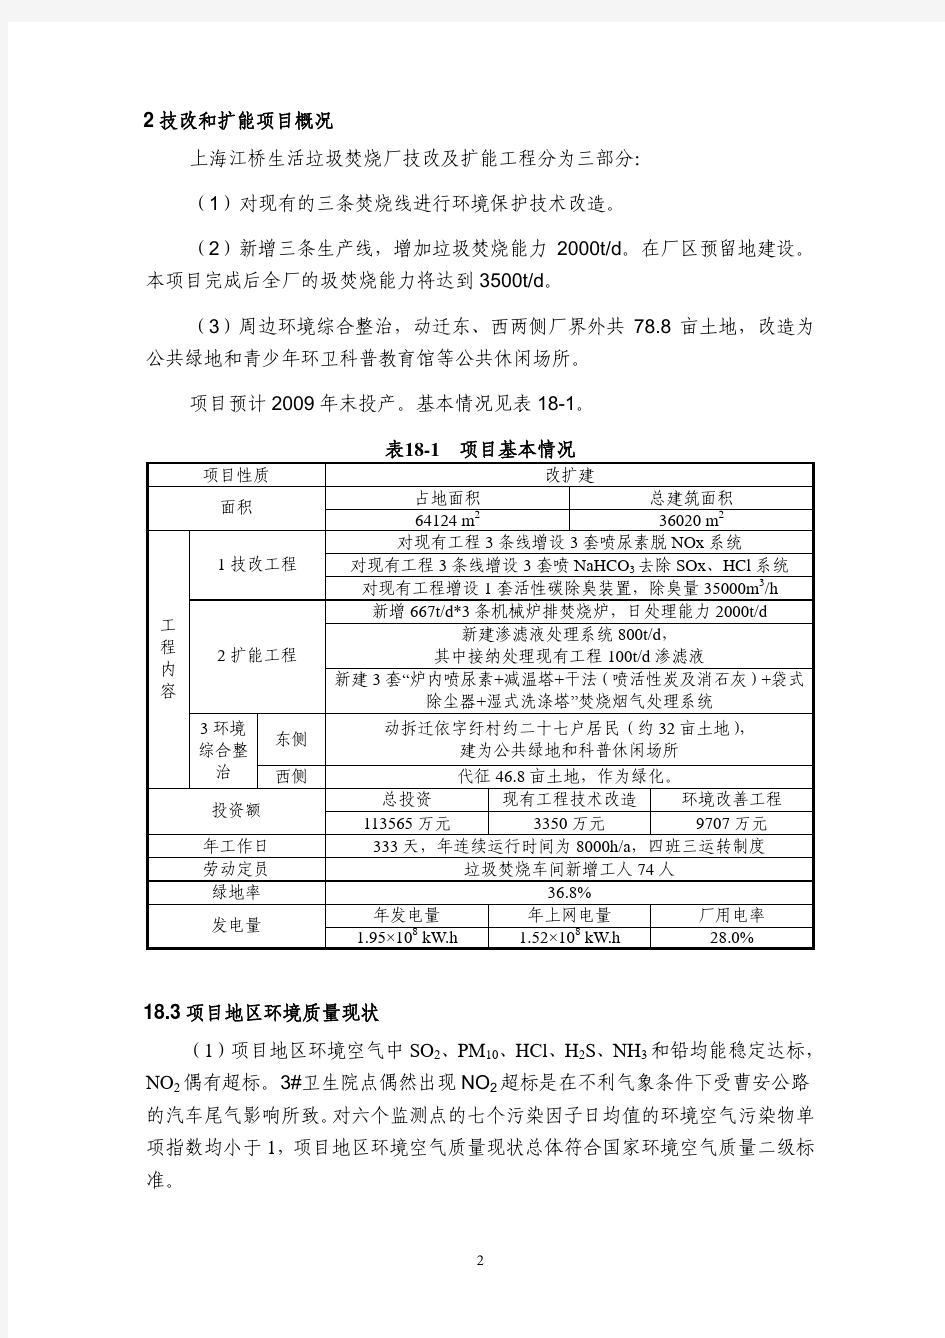 上海江桥生活垃圾焚烧厂技改及扩能 工程环境影响报告书(简本)